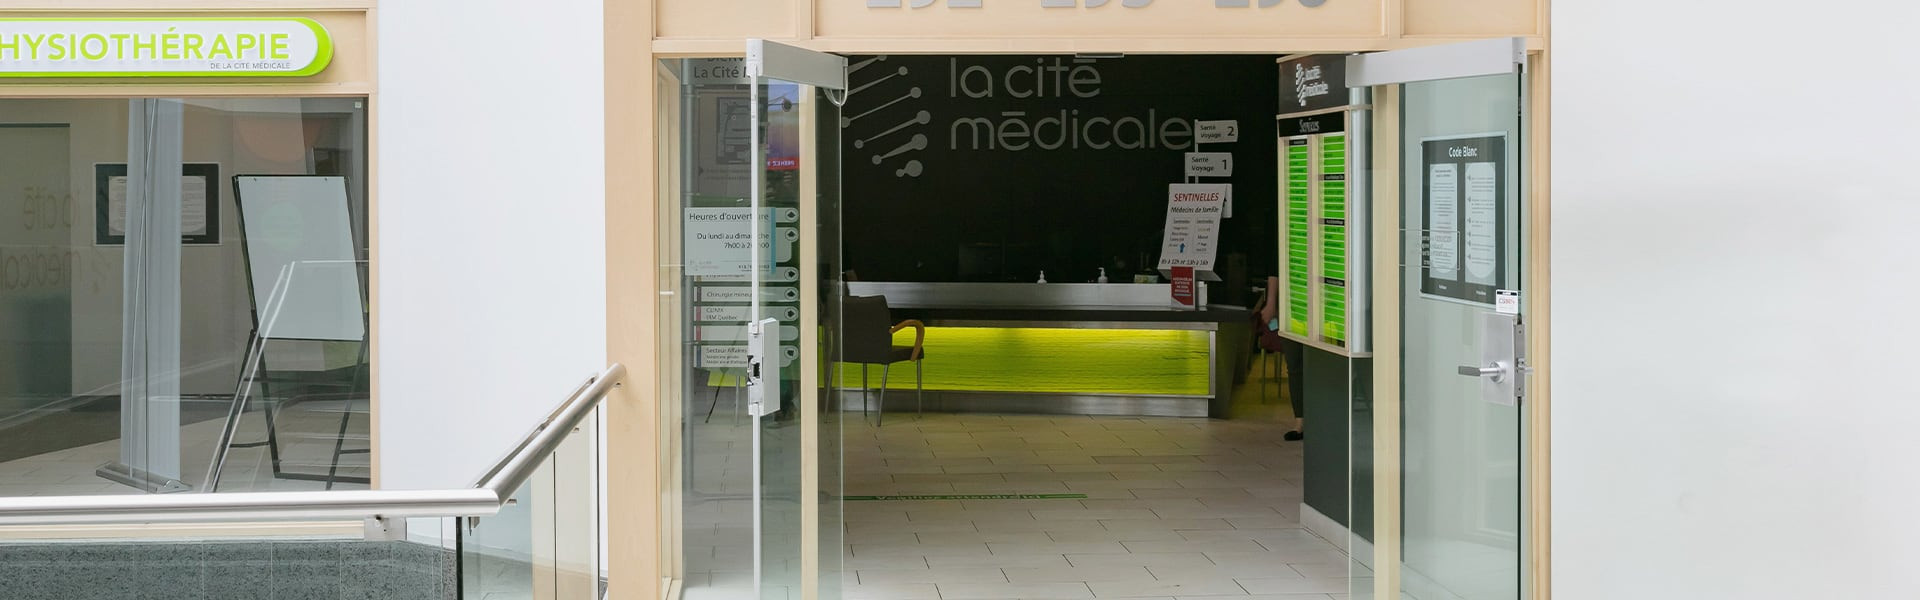 La Cité Médicale – Clinique Sud | Place de la Cité